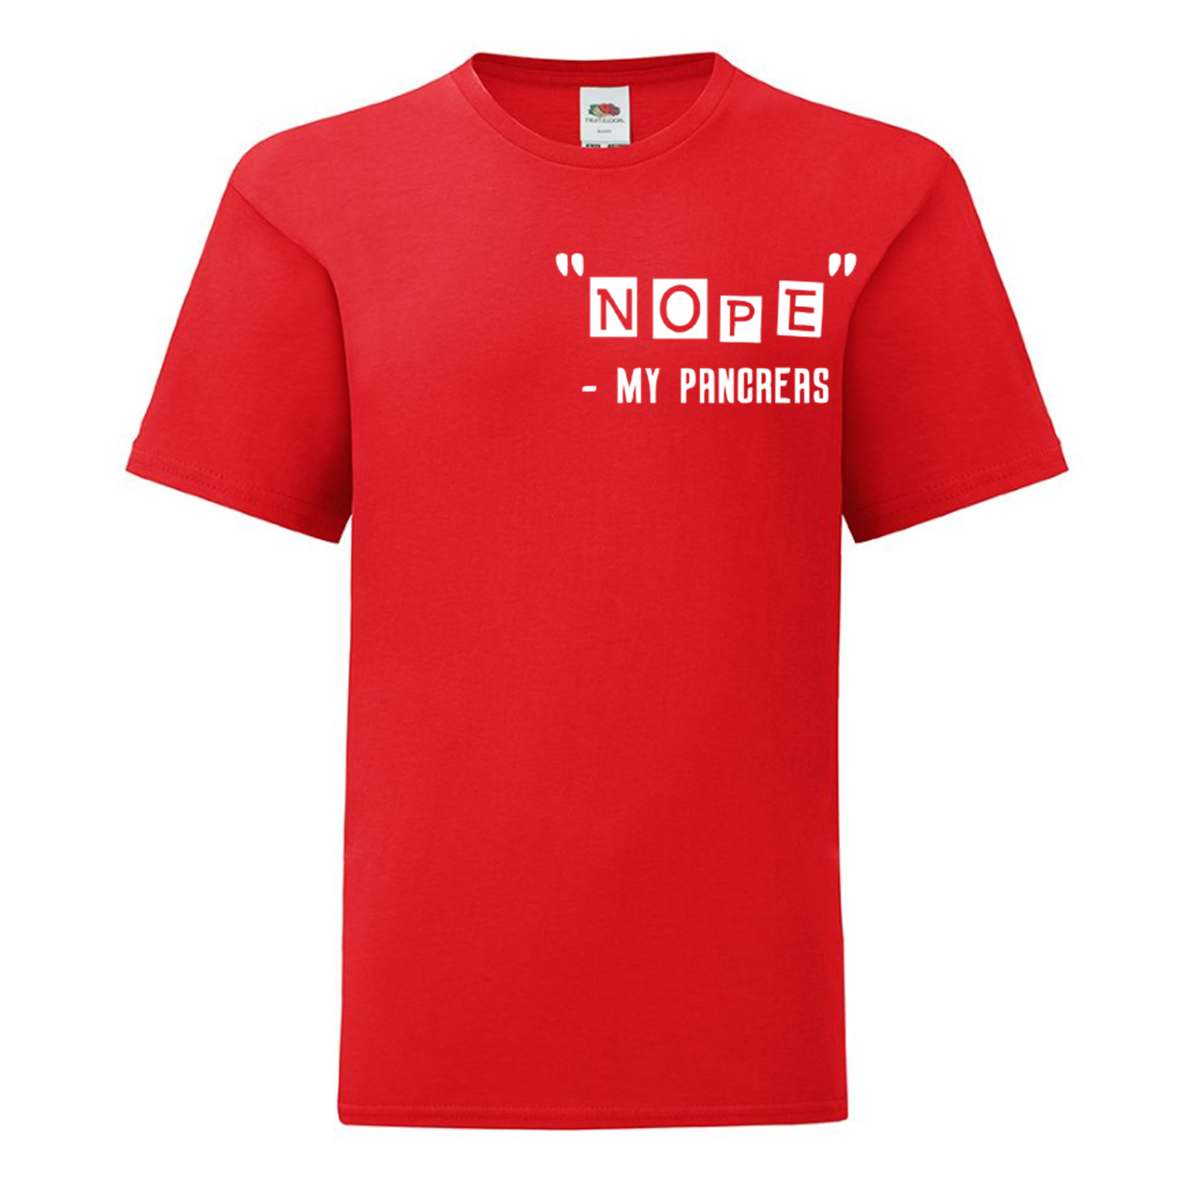 "Nope" - My Pancreas Kids T Shirt